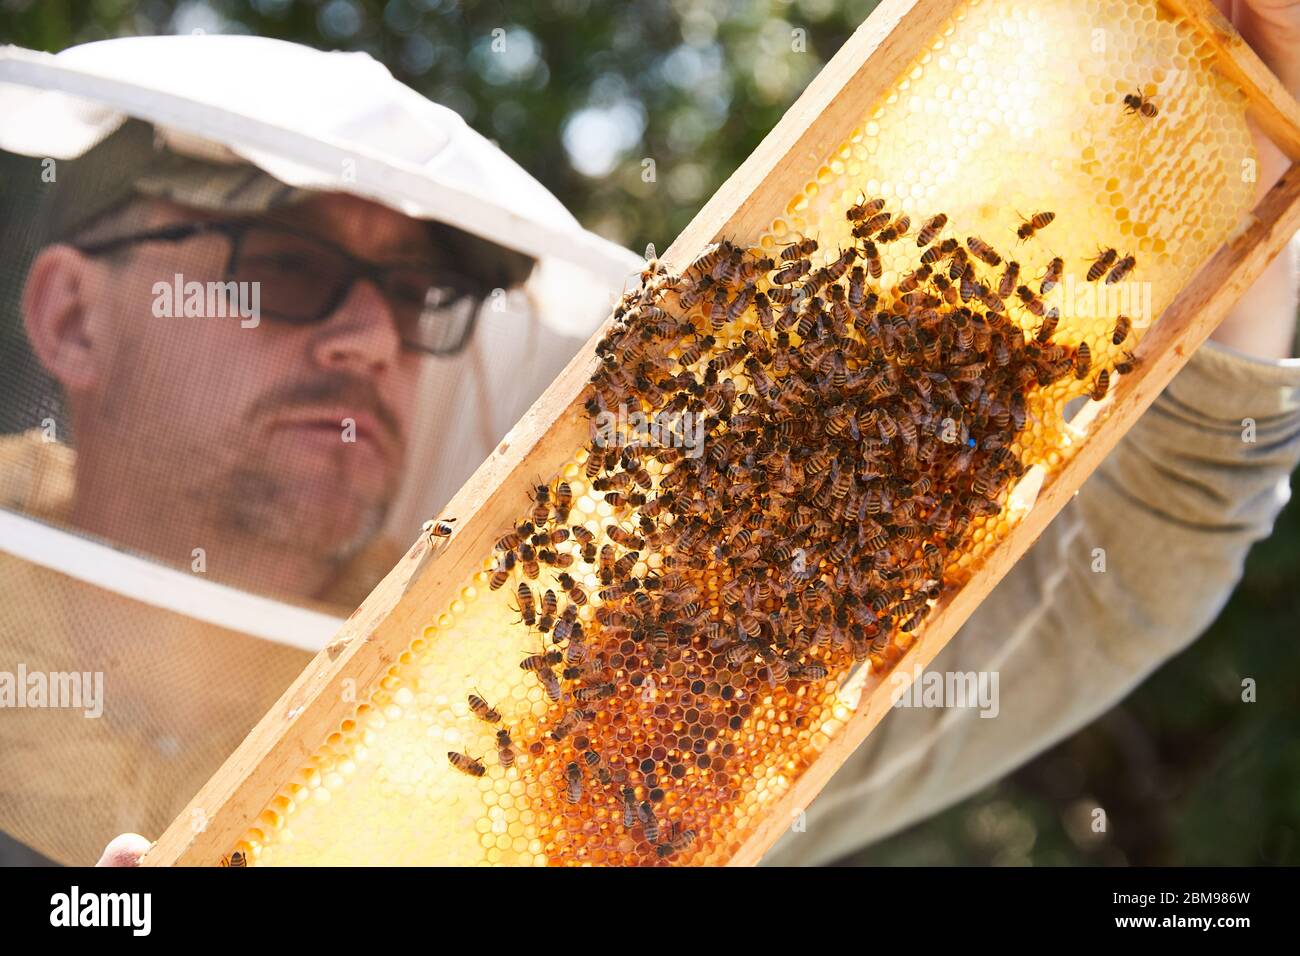 Un apicultor urbano examina su colmena de abejas para ver si han llevado a su nueva reina Foto de stock